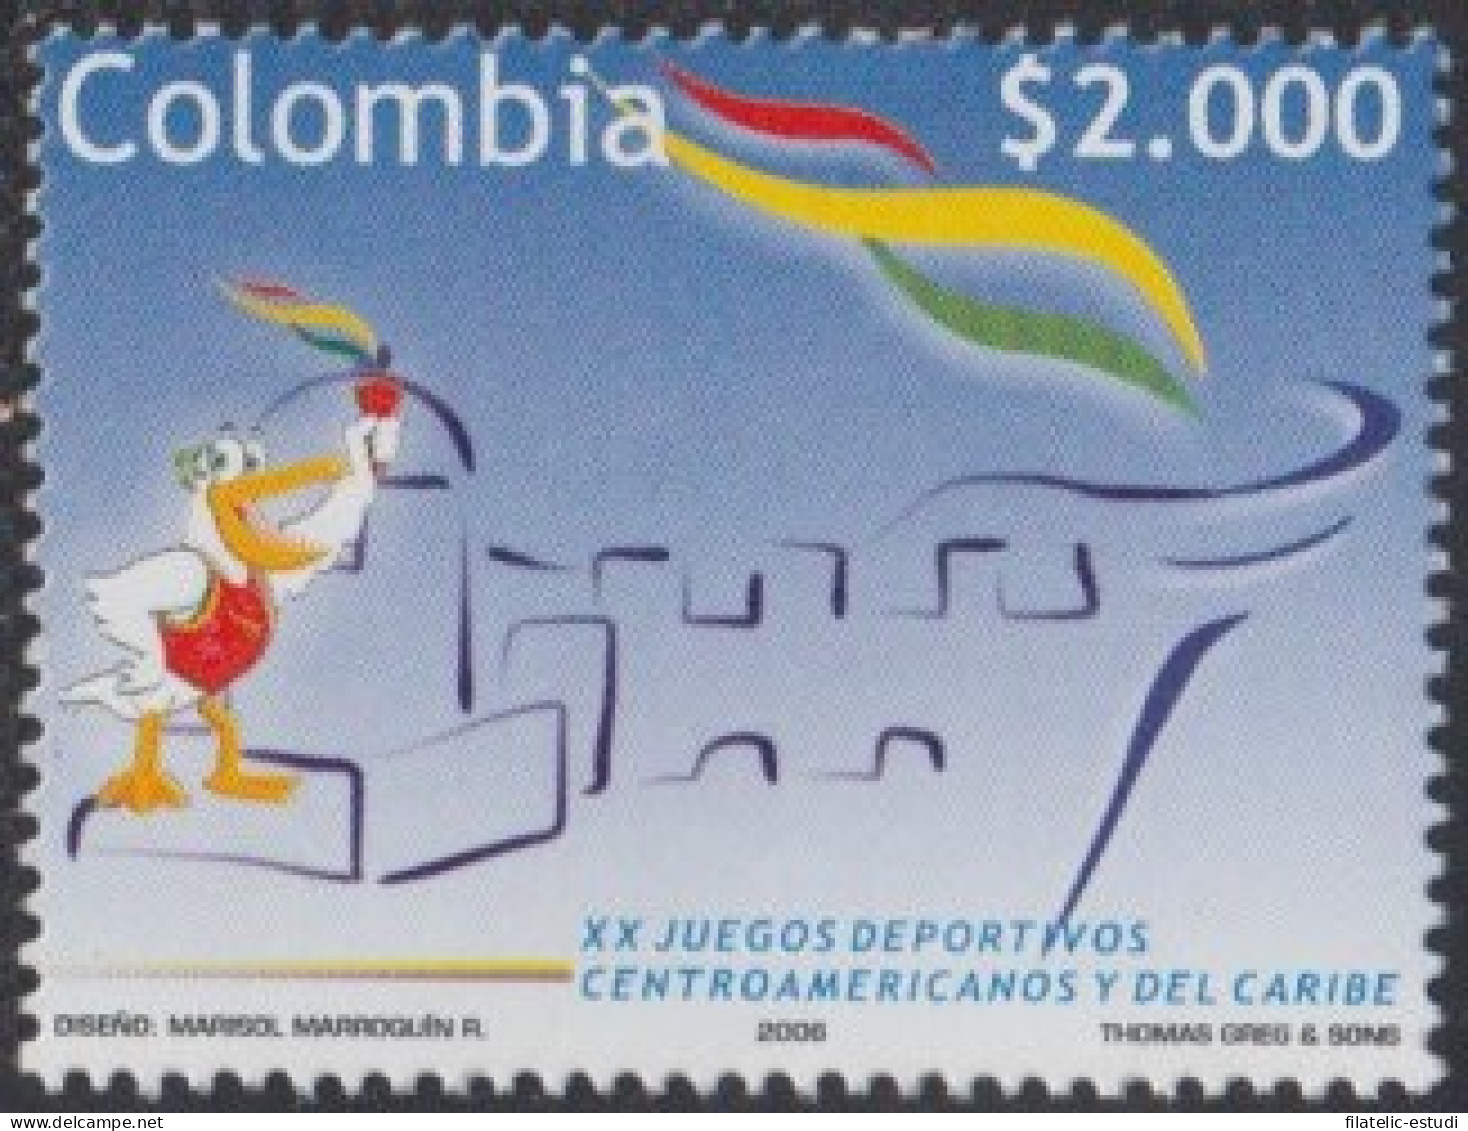 Colombia 1395 2006 Deportes. Juegos Centro-americanos Y Caribeños MNH - Colombia